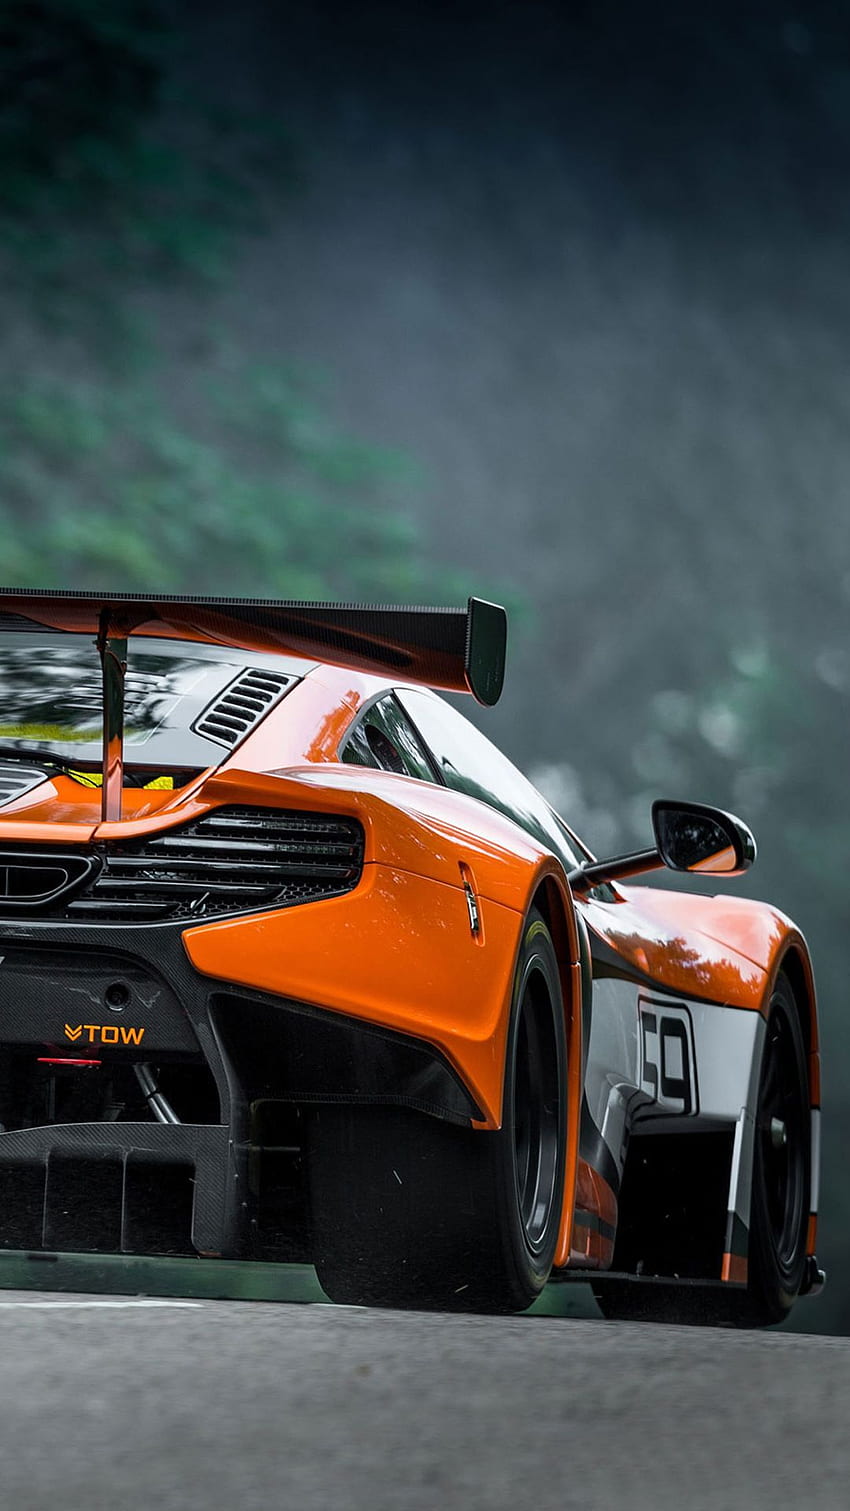 Ƒ↑TOQUE E OBTENHA O APLICATIVO! Men's World McLaren Orange Car Speed ​​Cool For Guys iPhone 6 plus Wallpa. Telefone para homens, iPhone 6 plus, carros Lux Papel de parede de celular HD